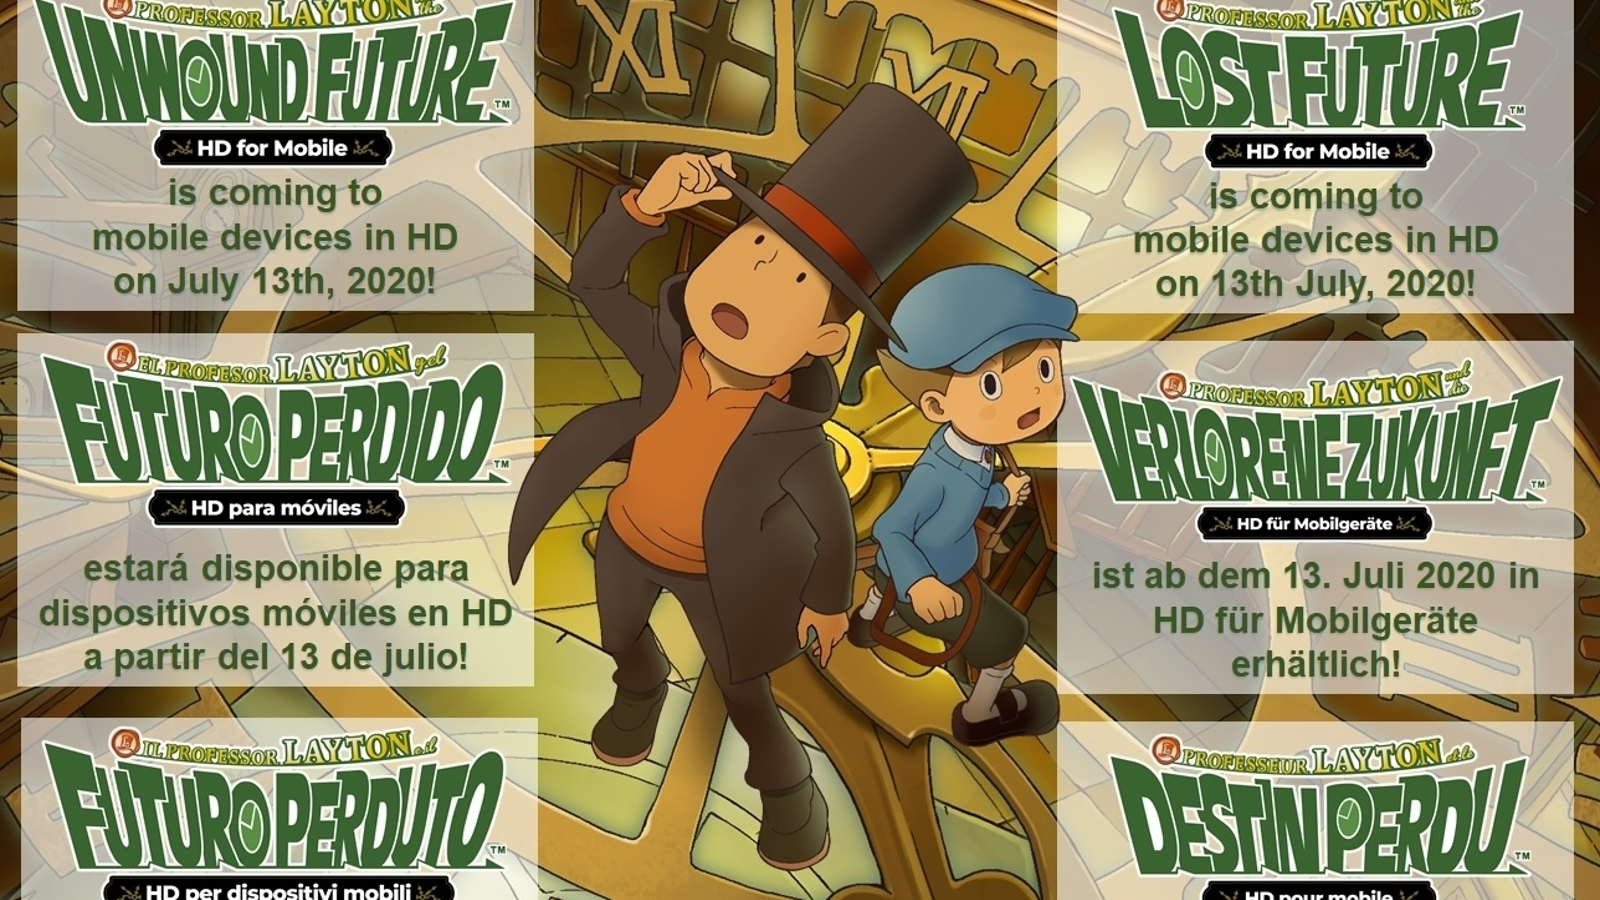 EL PROFESOR LAYTON Y El Futuro Perdido Ntr-C3Js-Esp Nintendo Ds